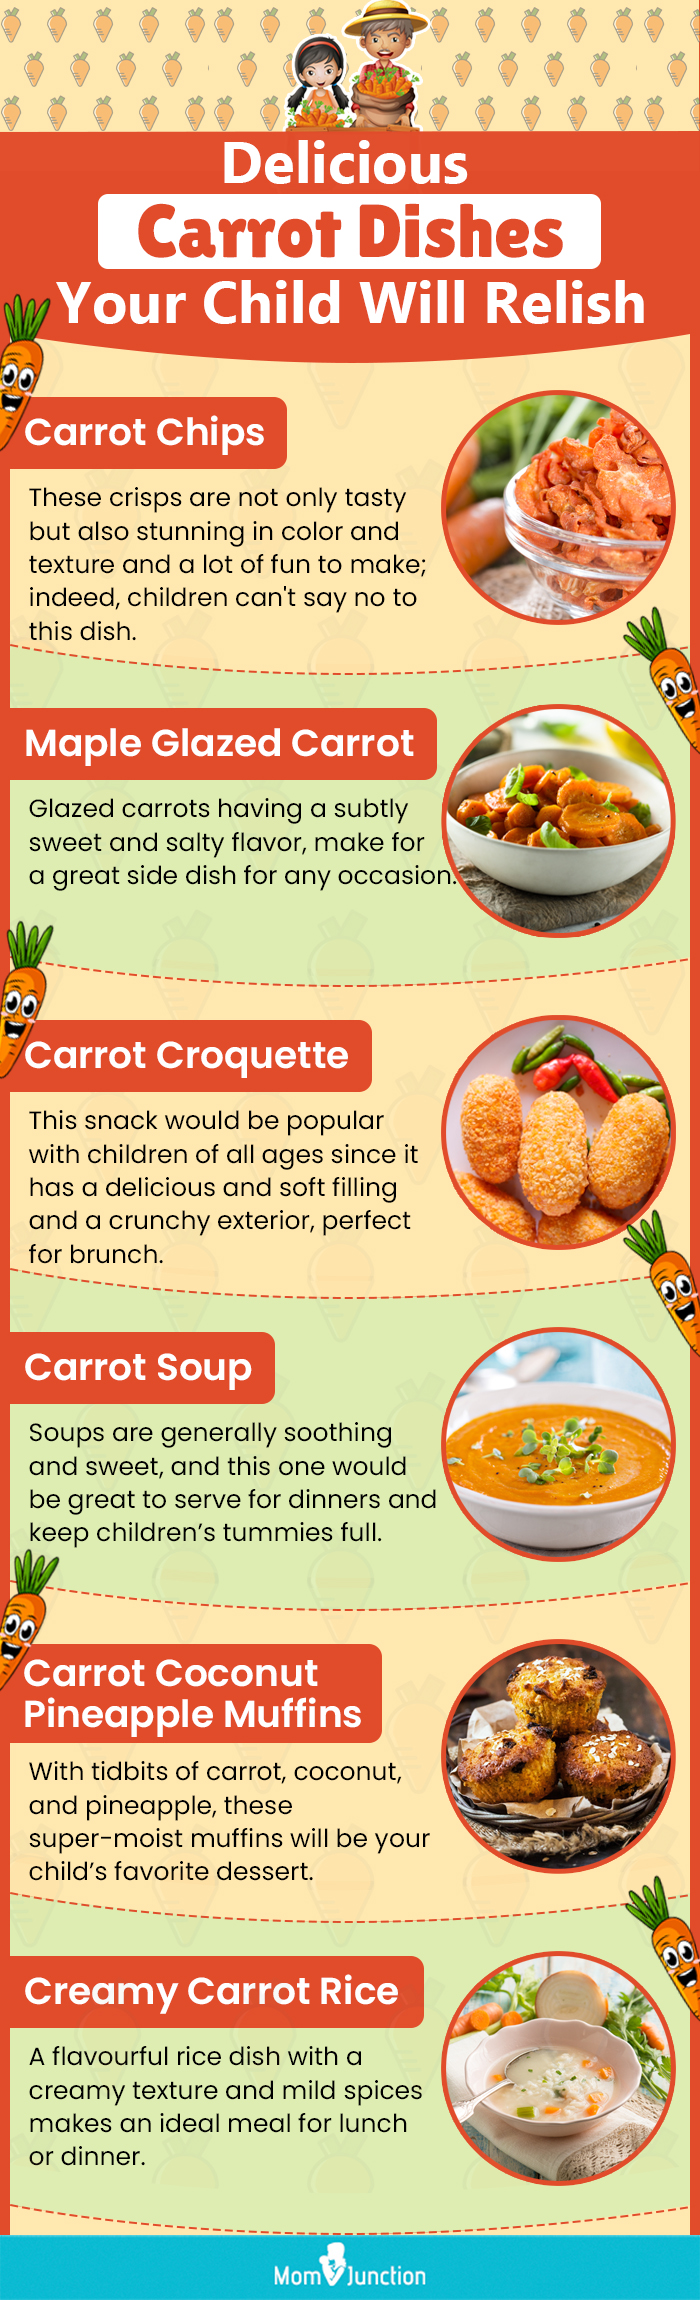 熟食店cious carrot dishes your child will relish (infographic)